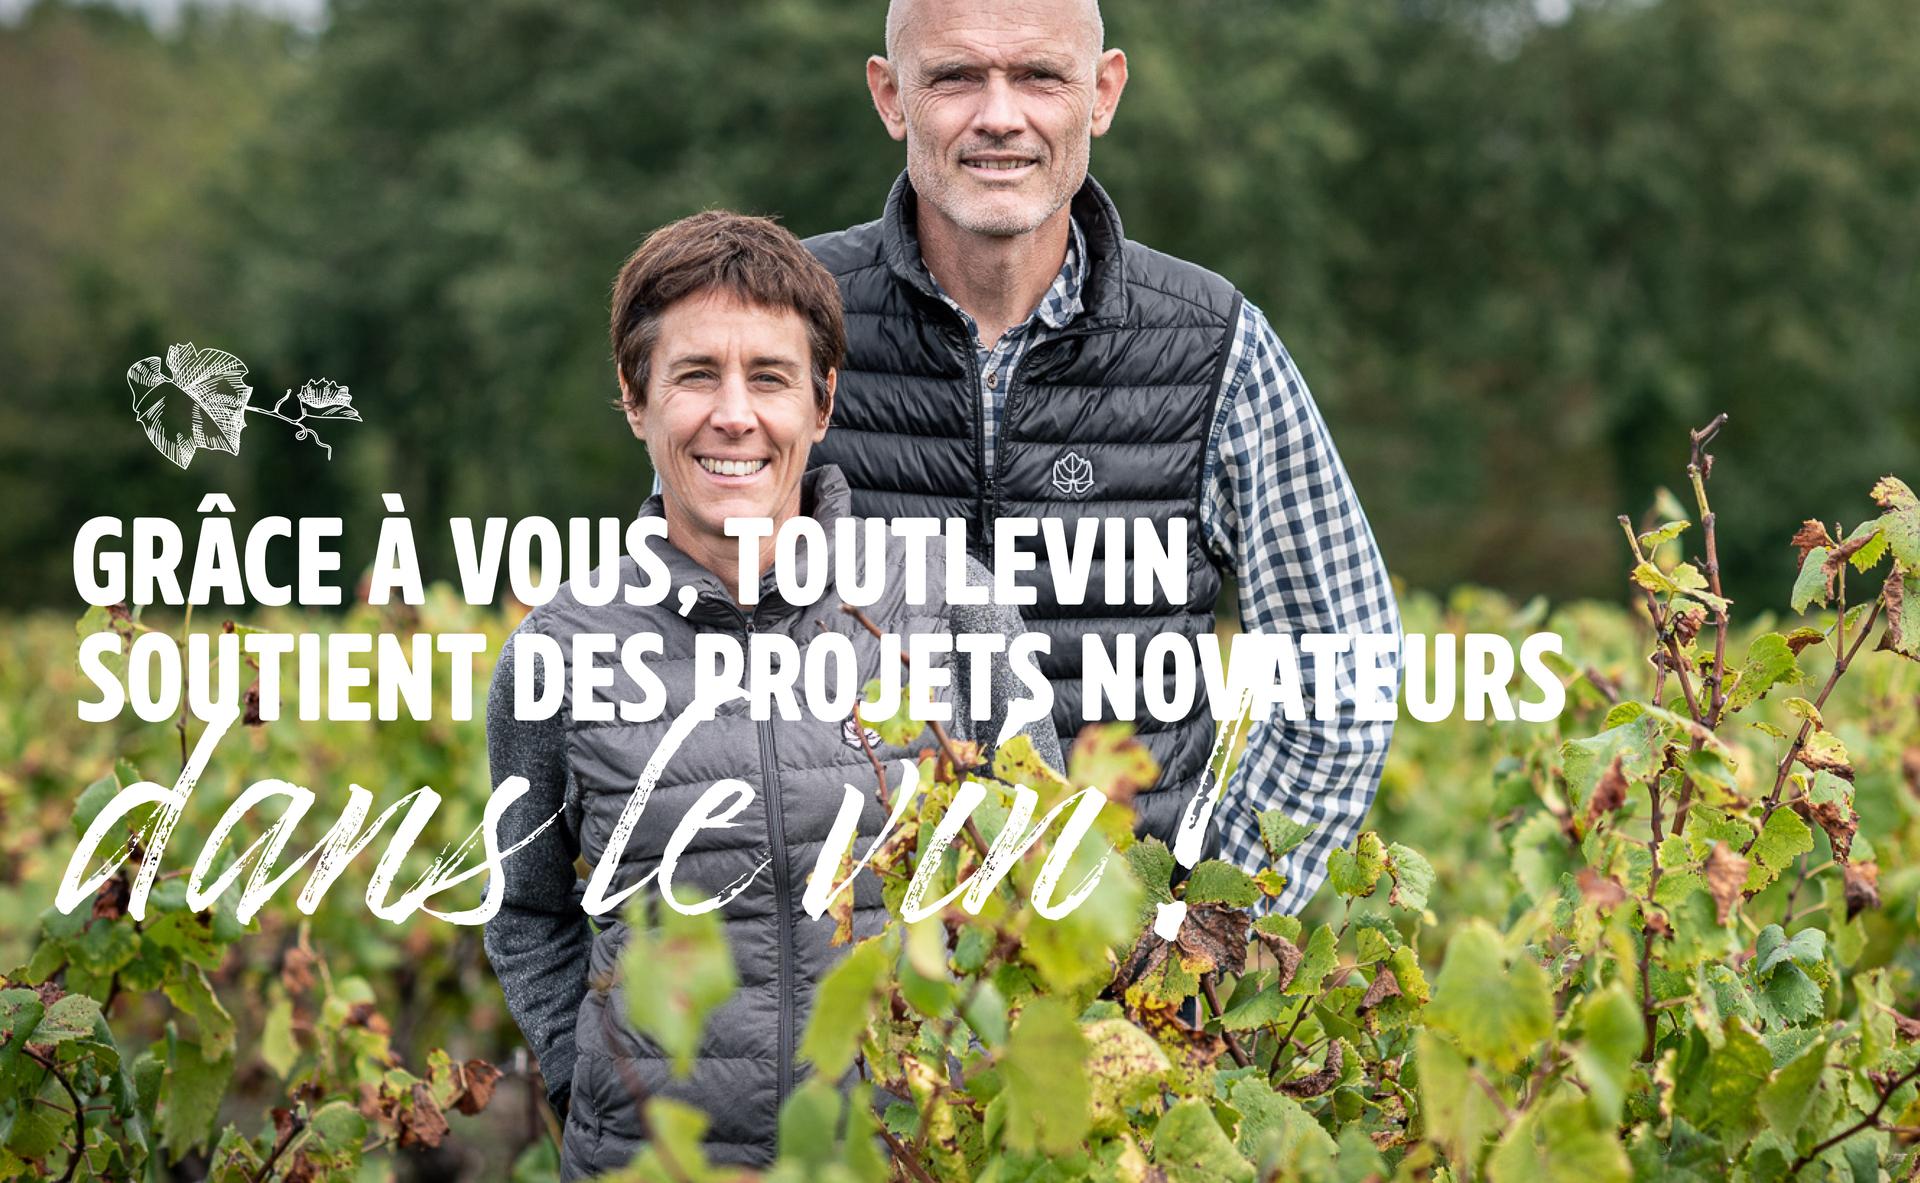 Grâce à vous, Toutlevin soutient des projets novateurs dans le vin